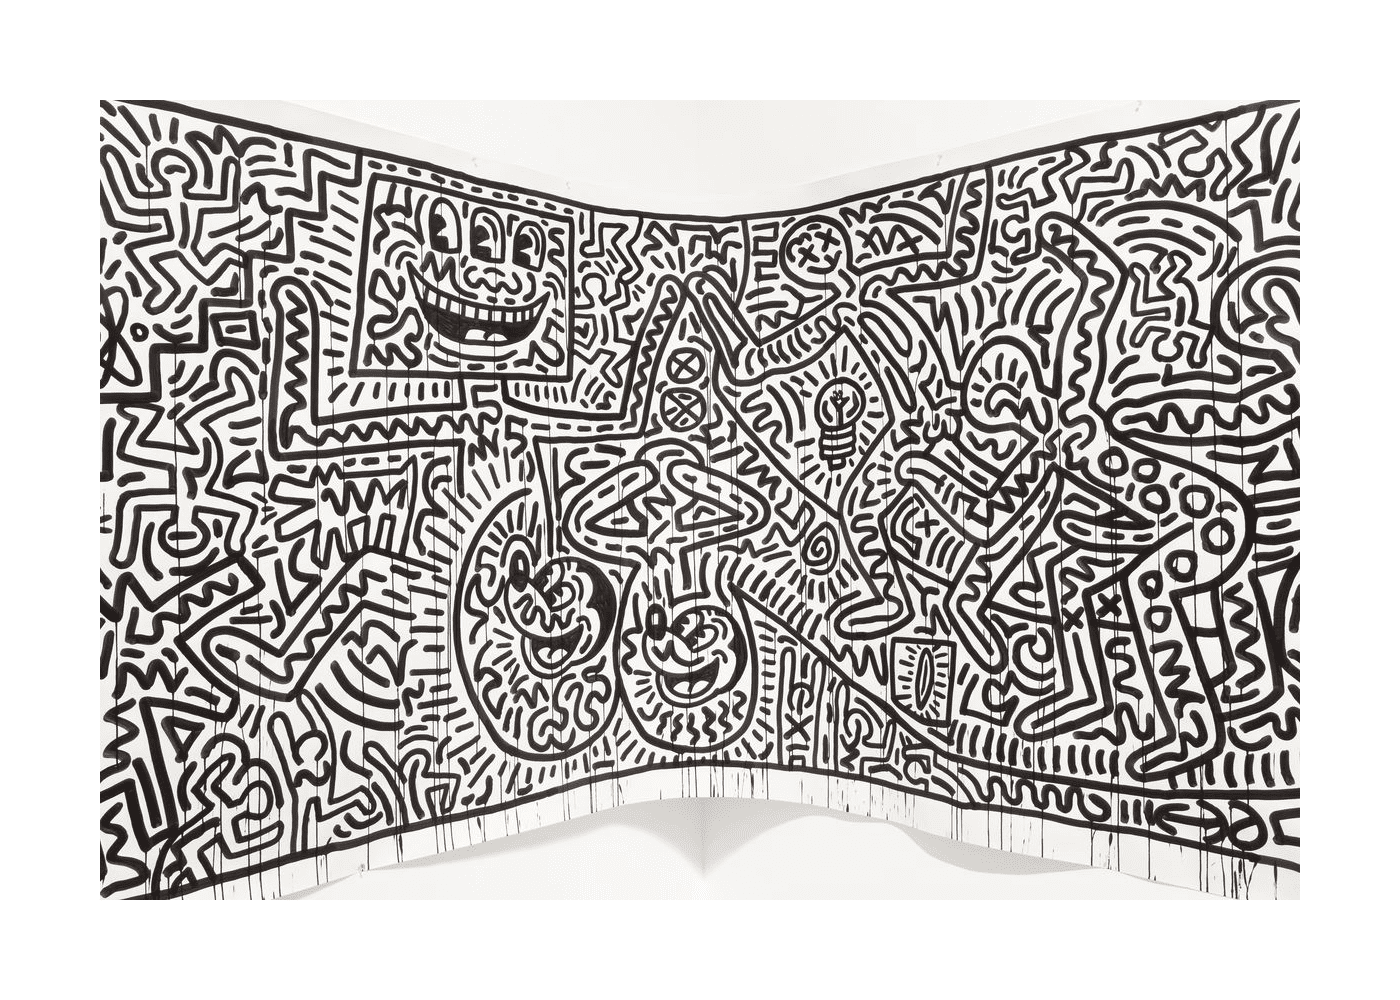   une fresque de Keith Haring 